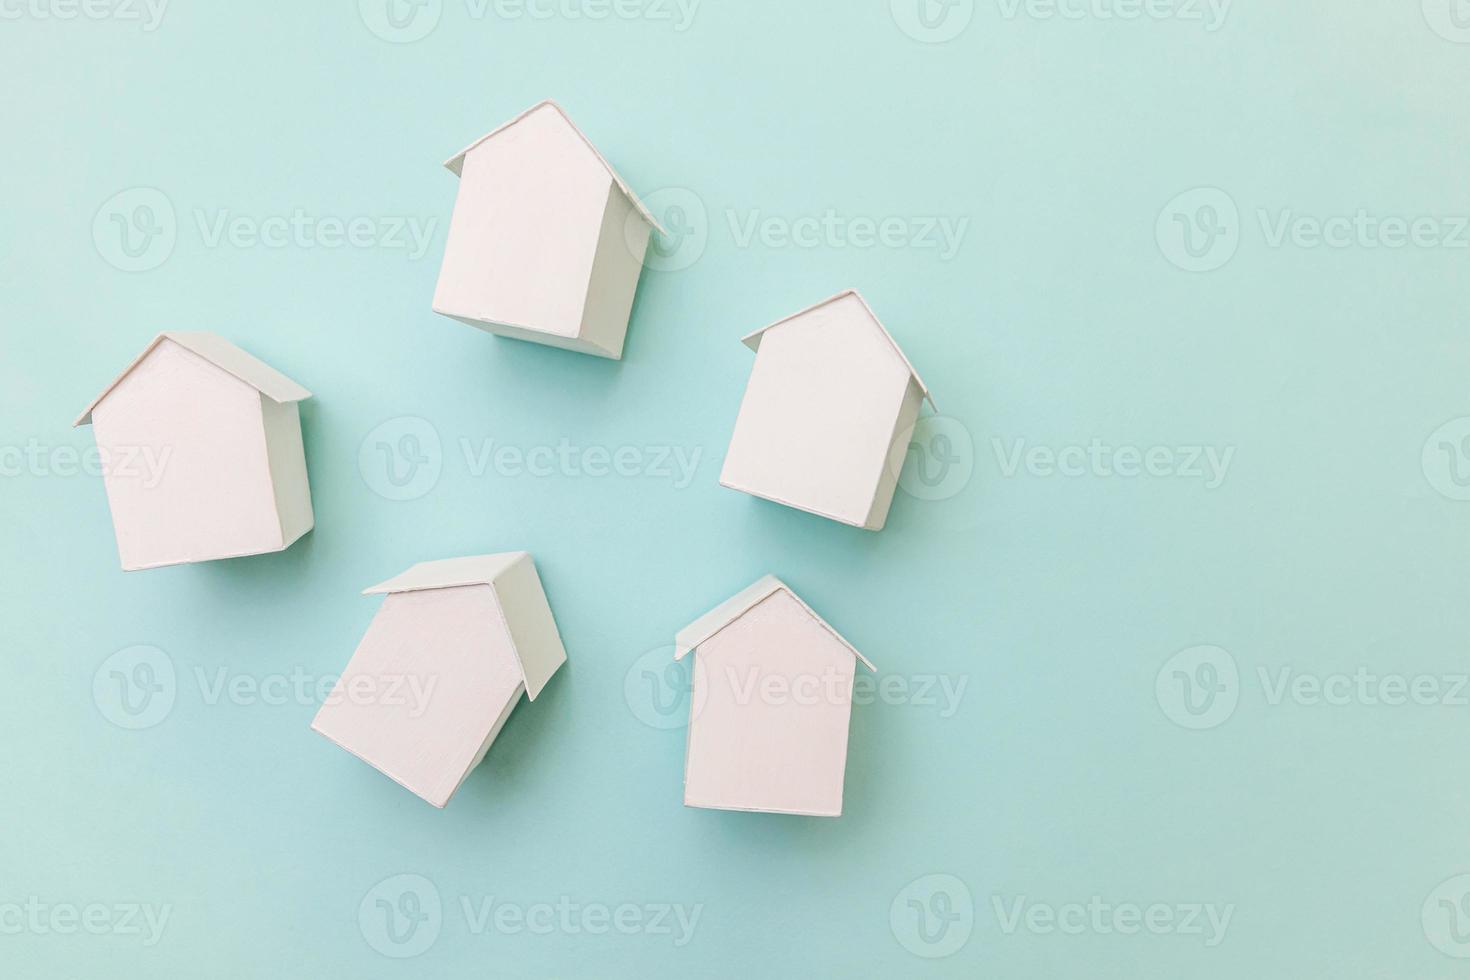 eenvoudig plat ontwerp met miniatuur witte speelgoedmodelhuizen geïsoleerd op pastelblauwe achtergrond. hypotheek onroerend goed verzekering droom huis concept. plat lag bovenaanzicht kopieerruimte. foto